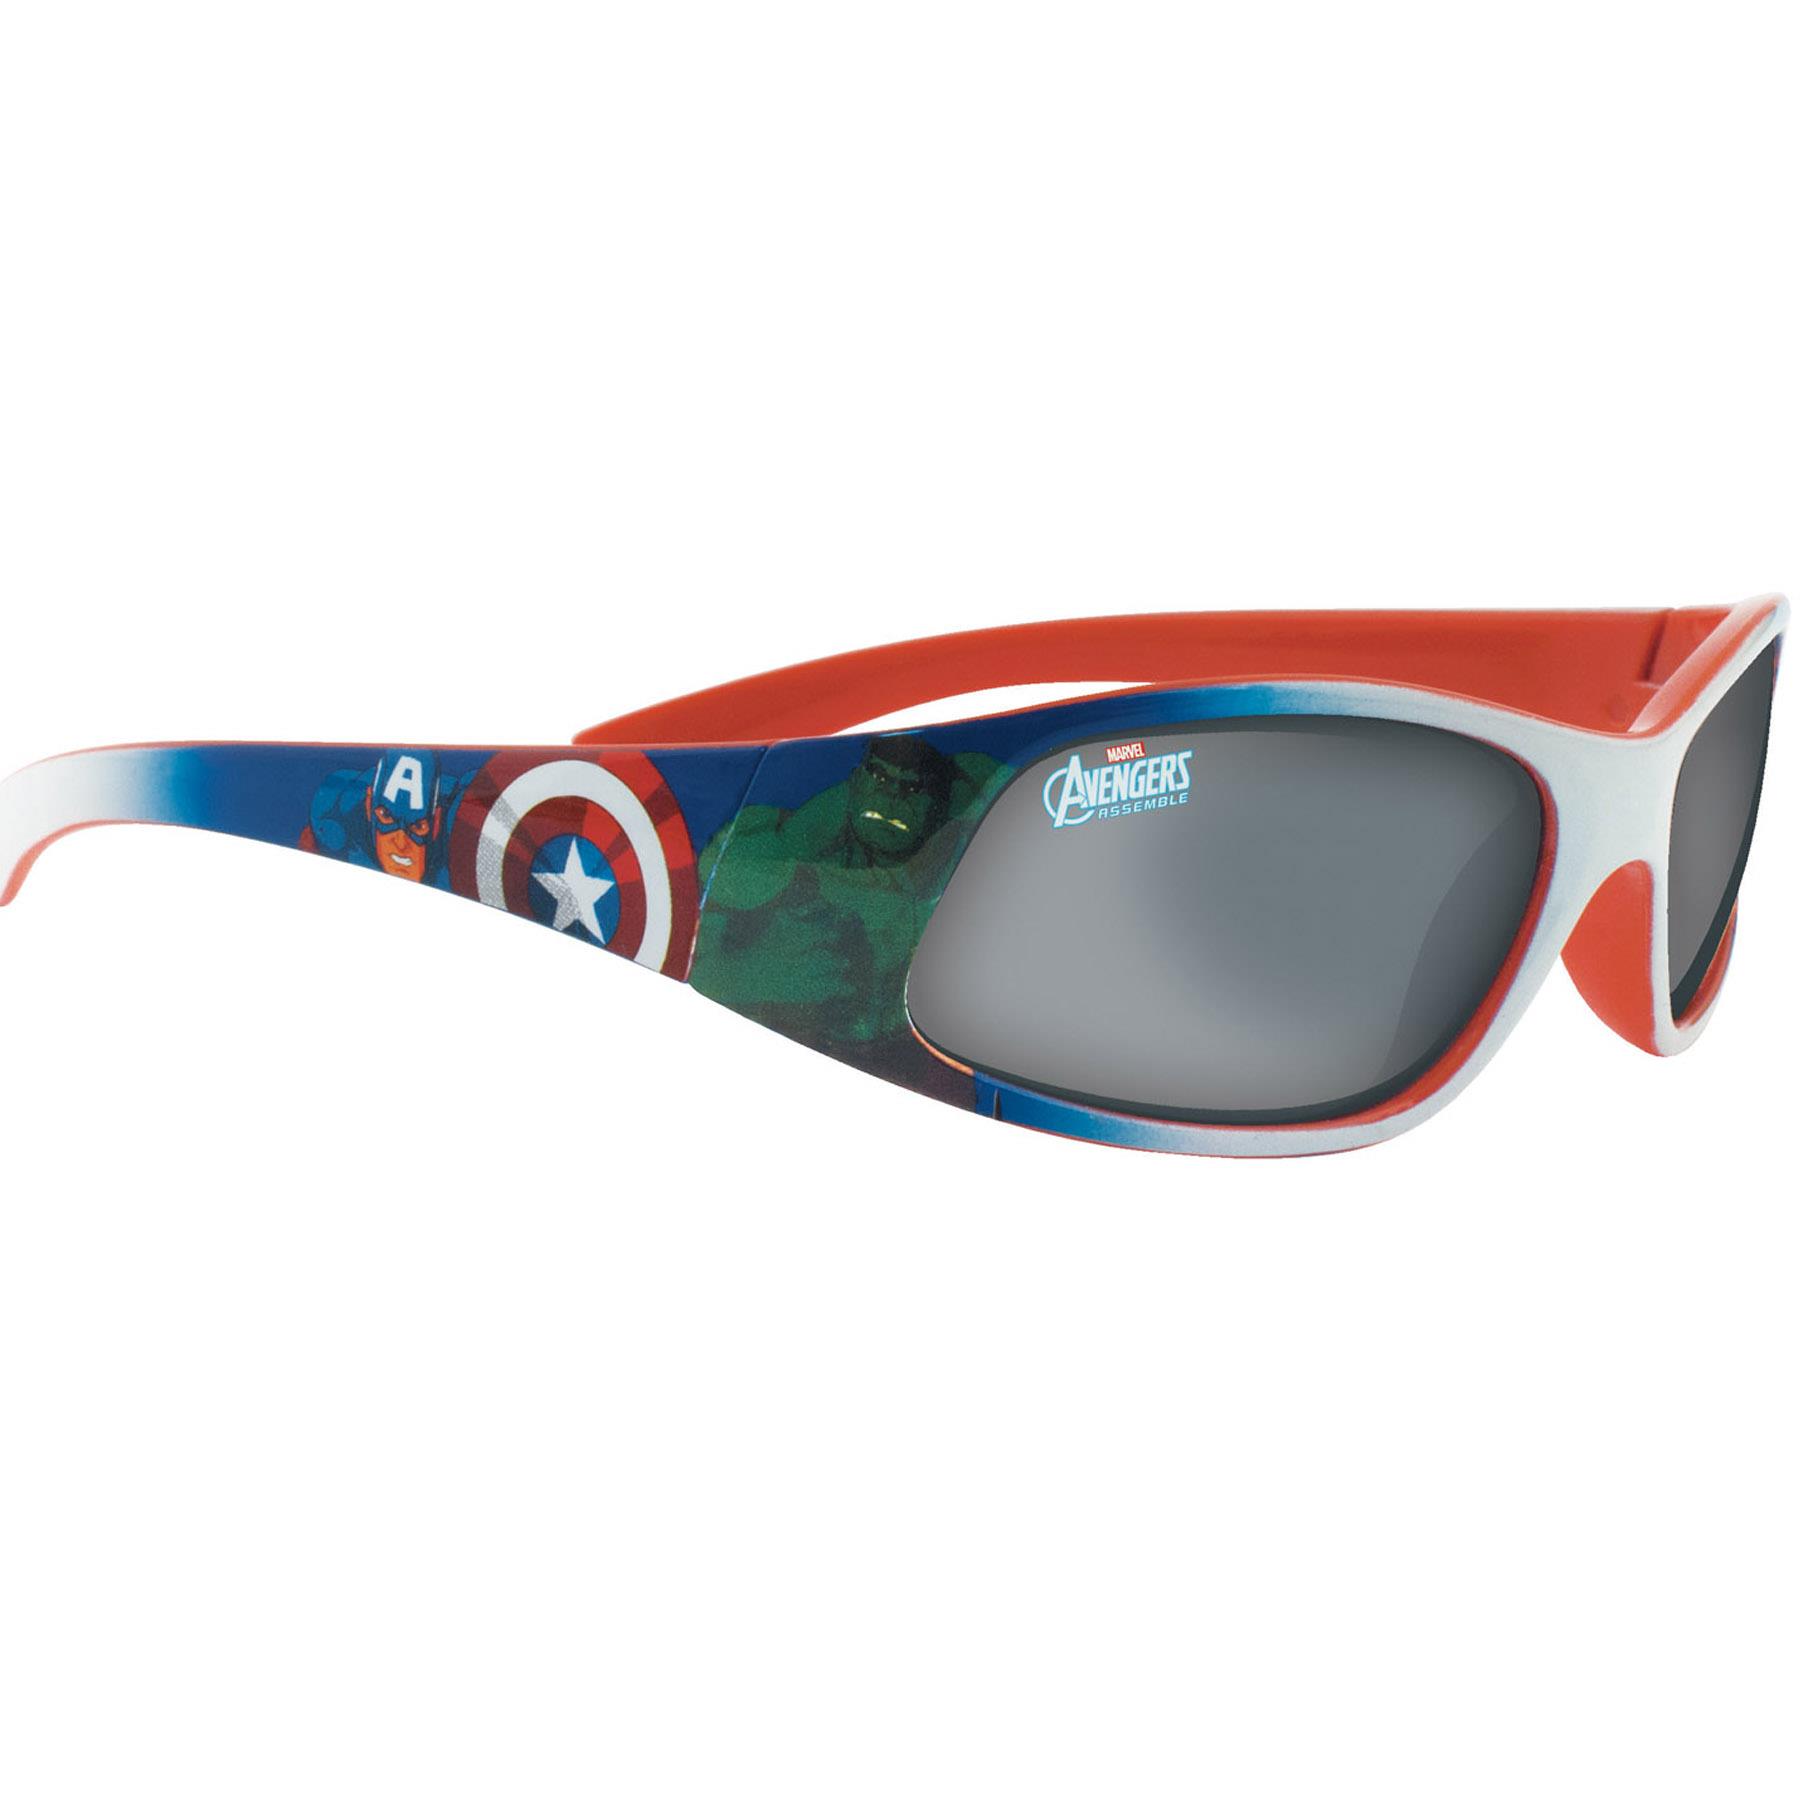 Superheroes Children's Sunglasses UV protection for Holiday - Marvel Avengers AVENG1